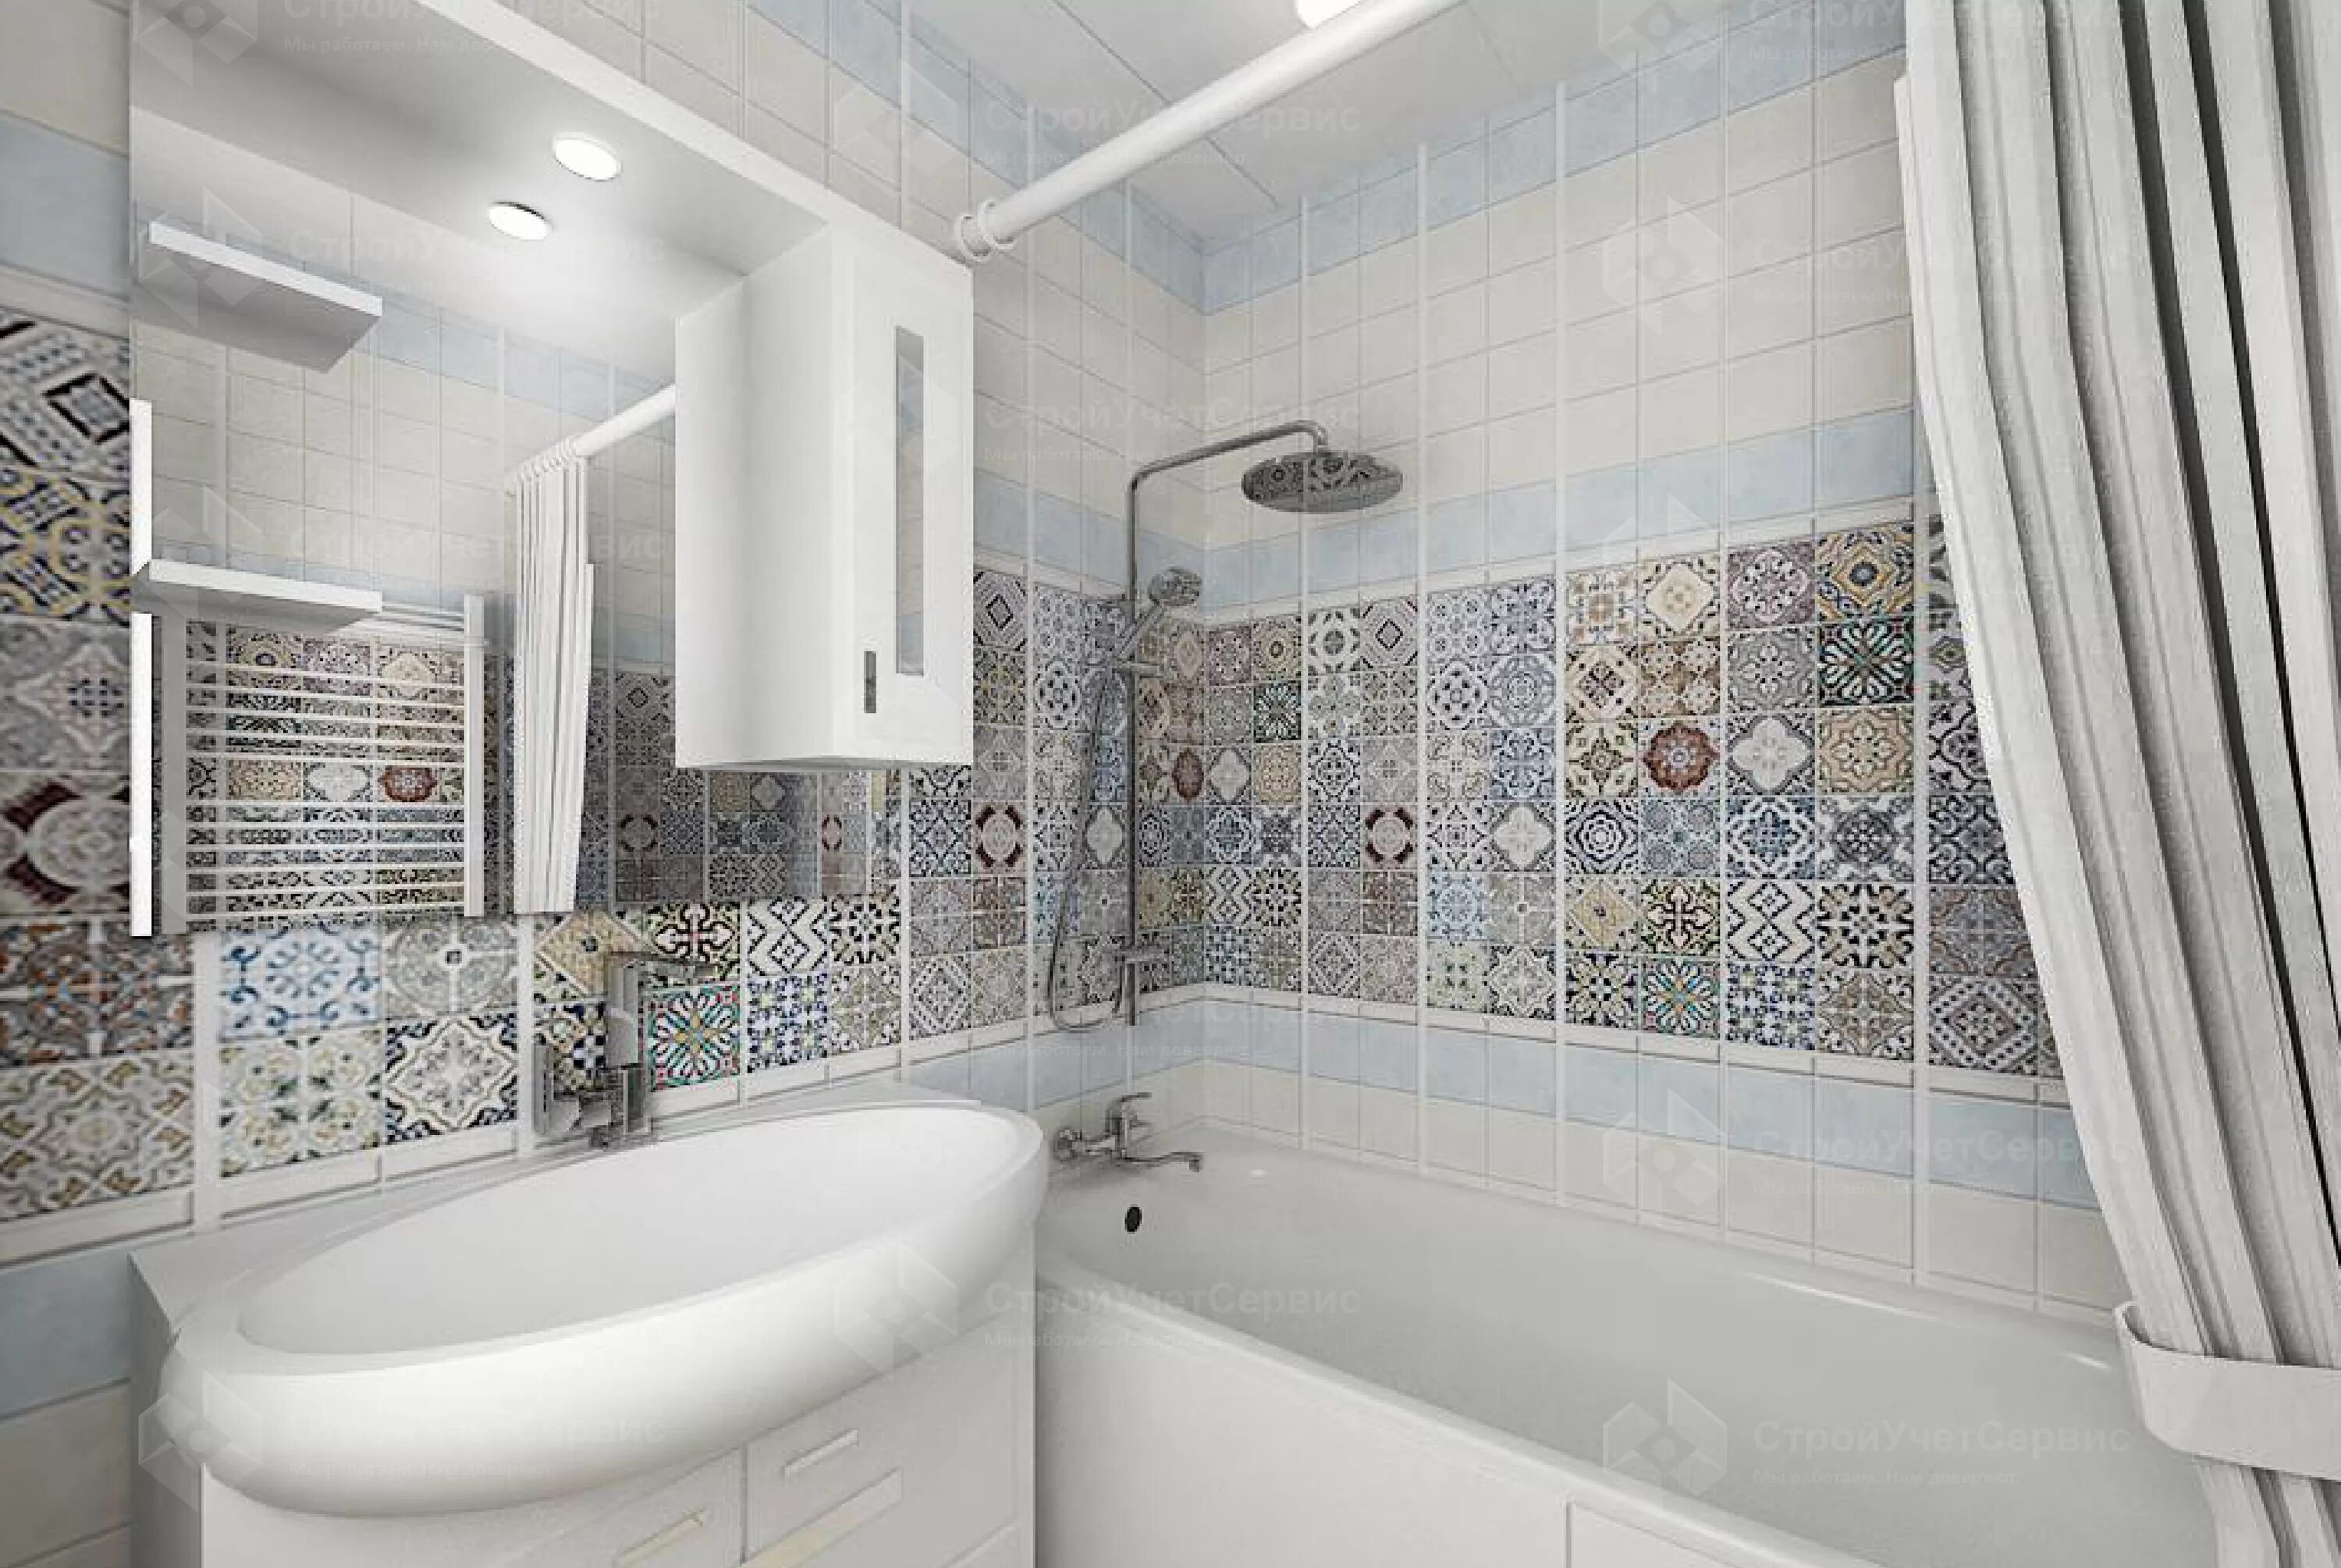 Проекты плитки ванных комнат. Ванная плитка. Проект плитки ванной комнаты. Ванная с мозаикой. Ванная с плиткой пэчворк.